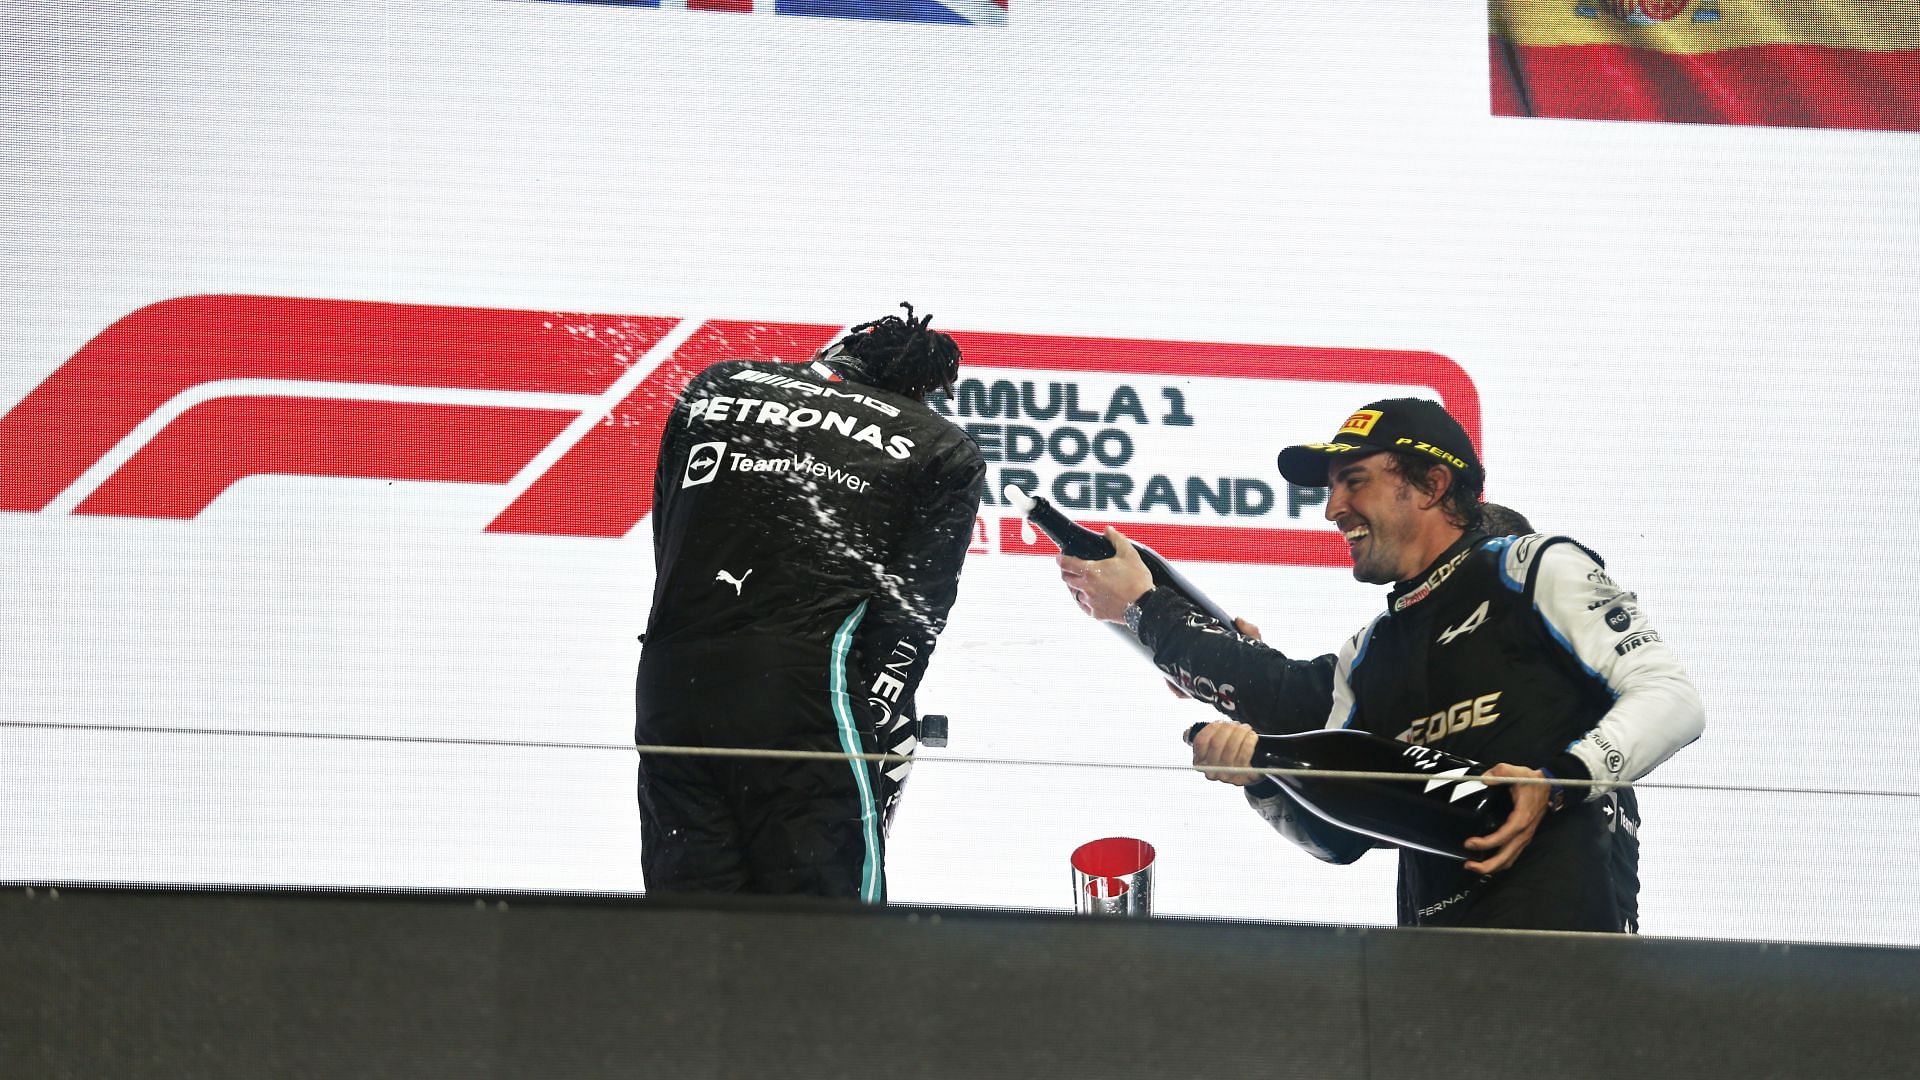 F1 Grand Prix of Qatar - Hamilton and Alonso